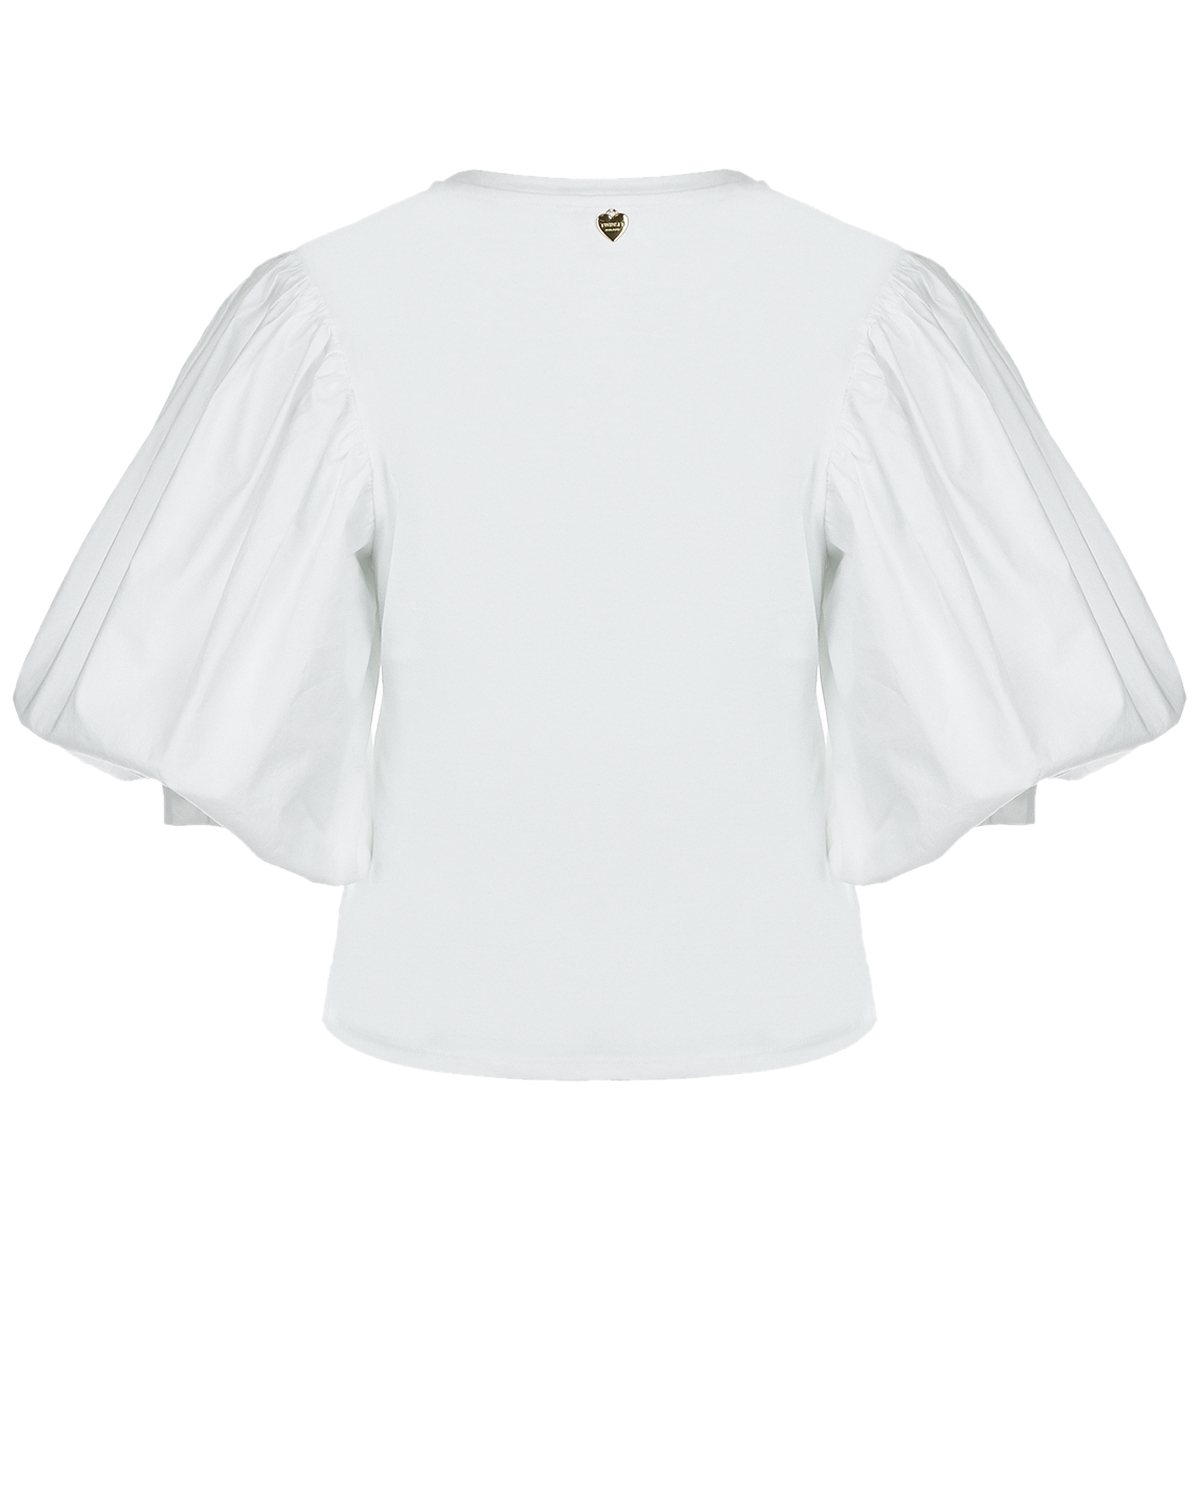 Белая футболка с объемными рукавами TWINSET, размер 44, цвет белый - фото 2